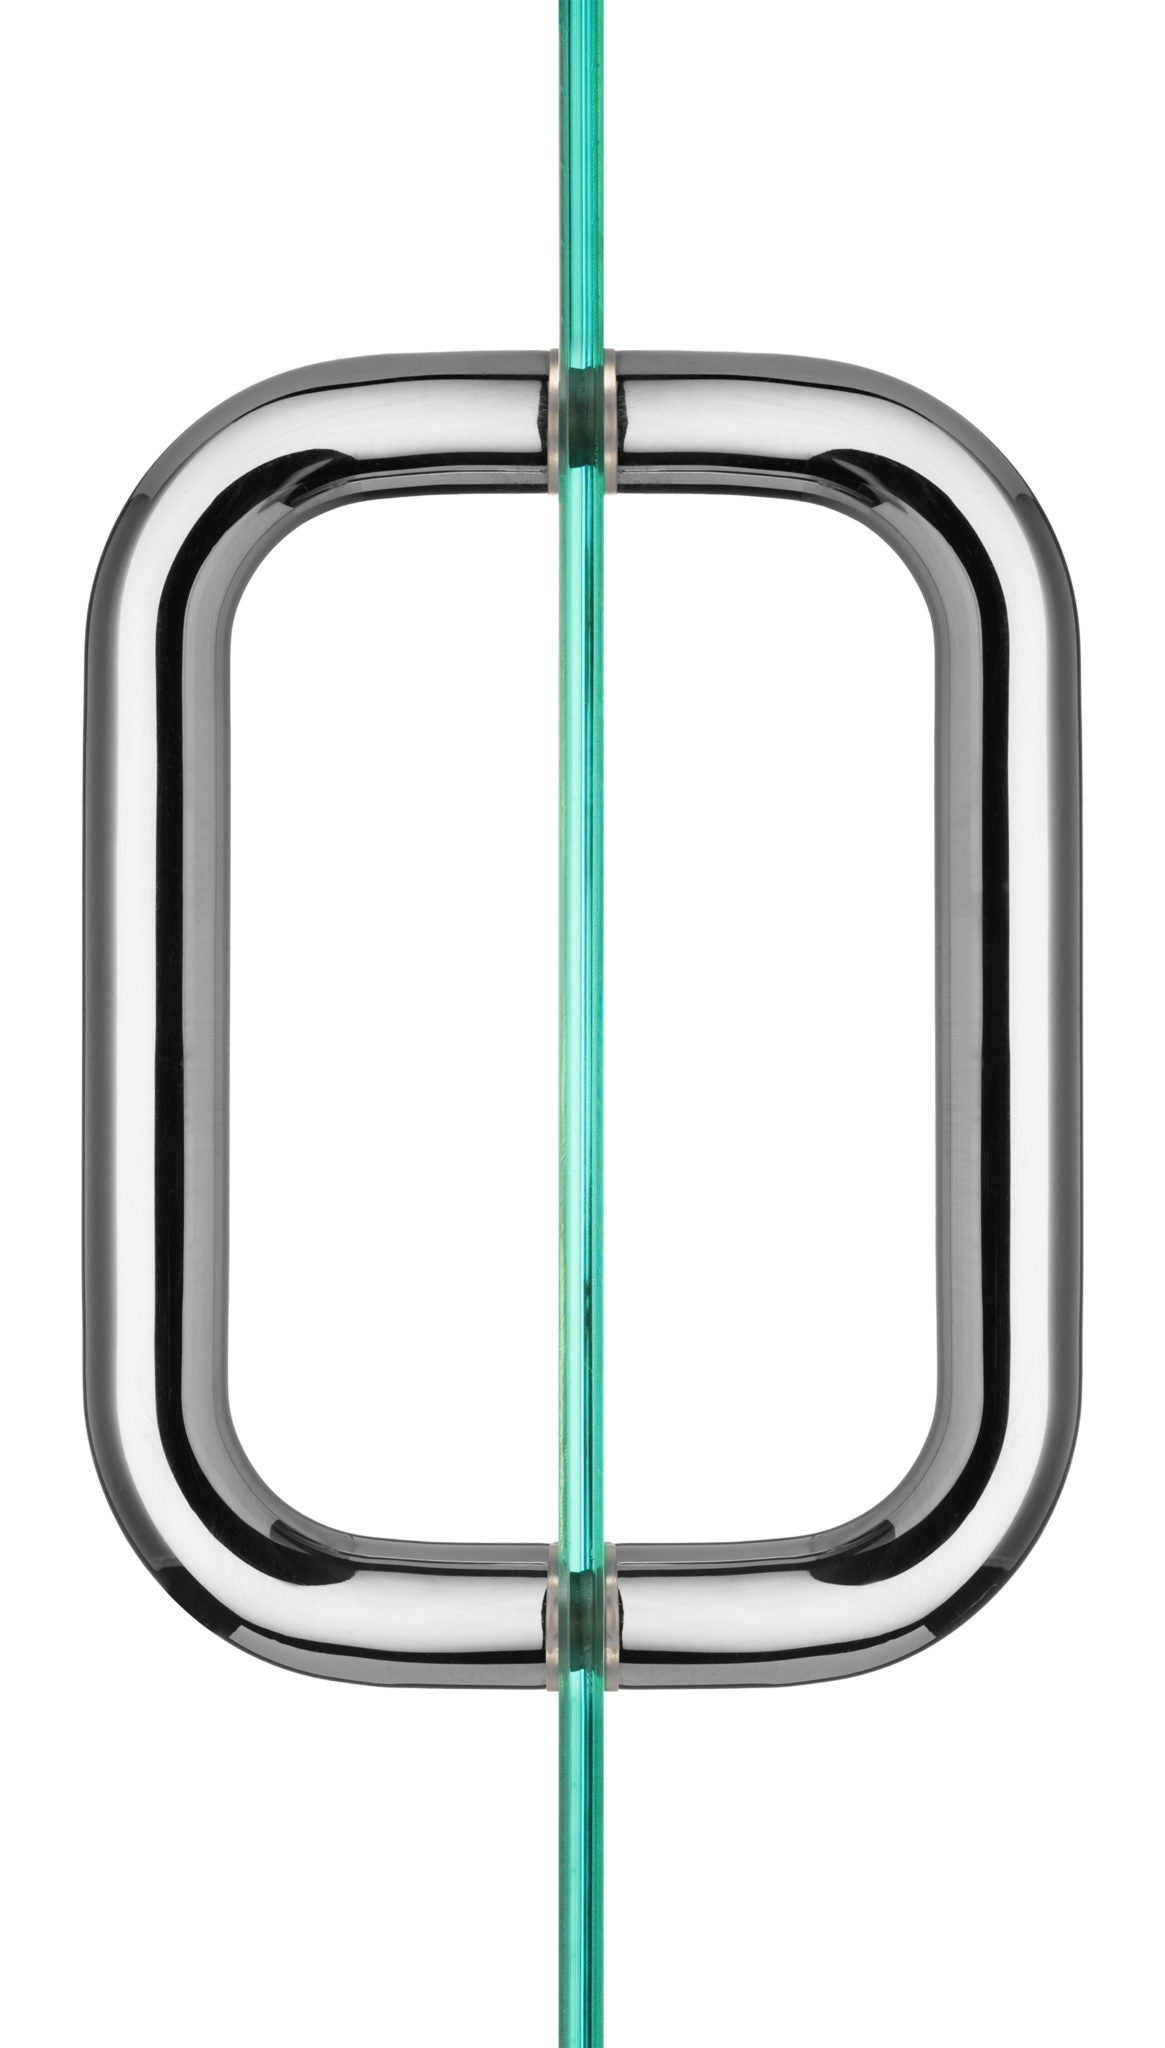 Back to Back Tubular Pull for Heavy Glass Frameless Shower Doors